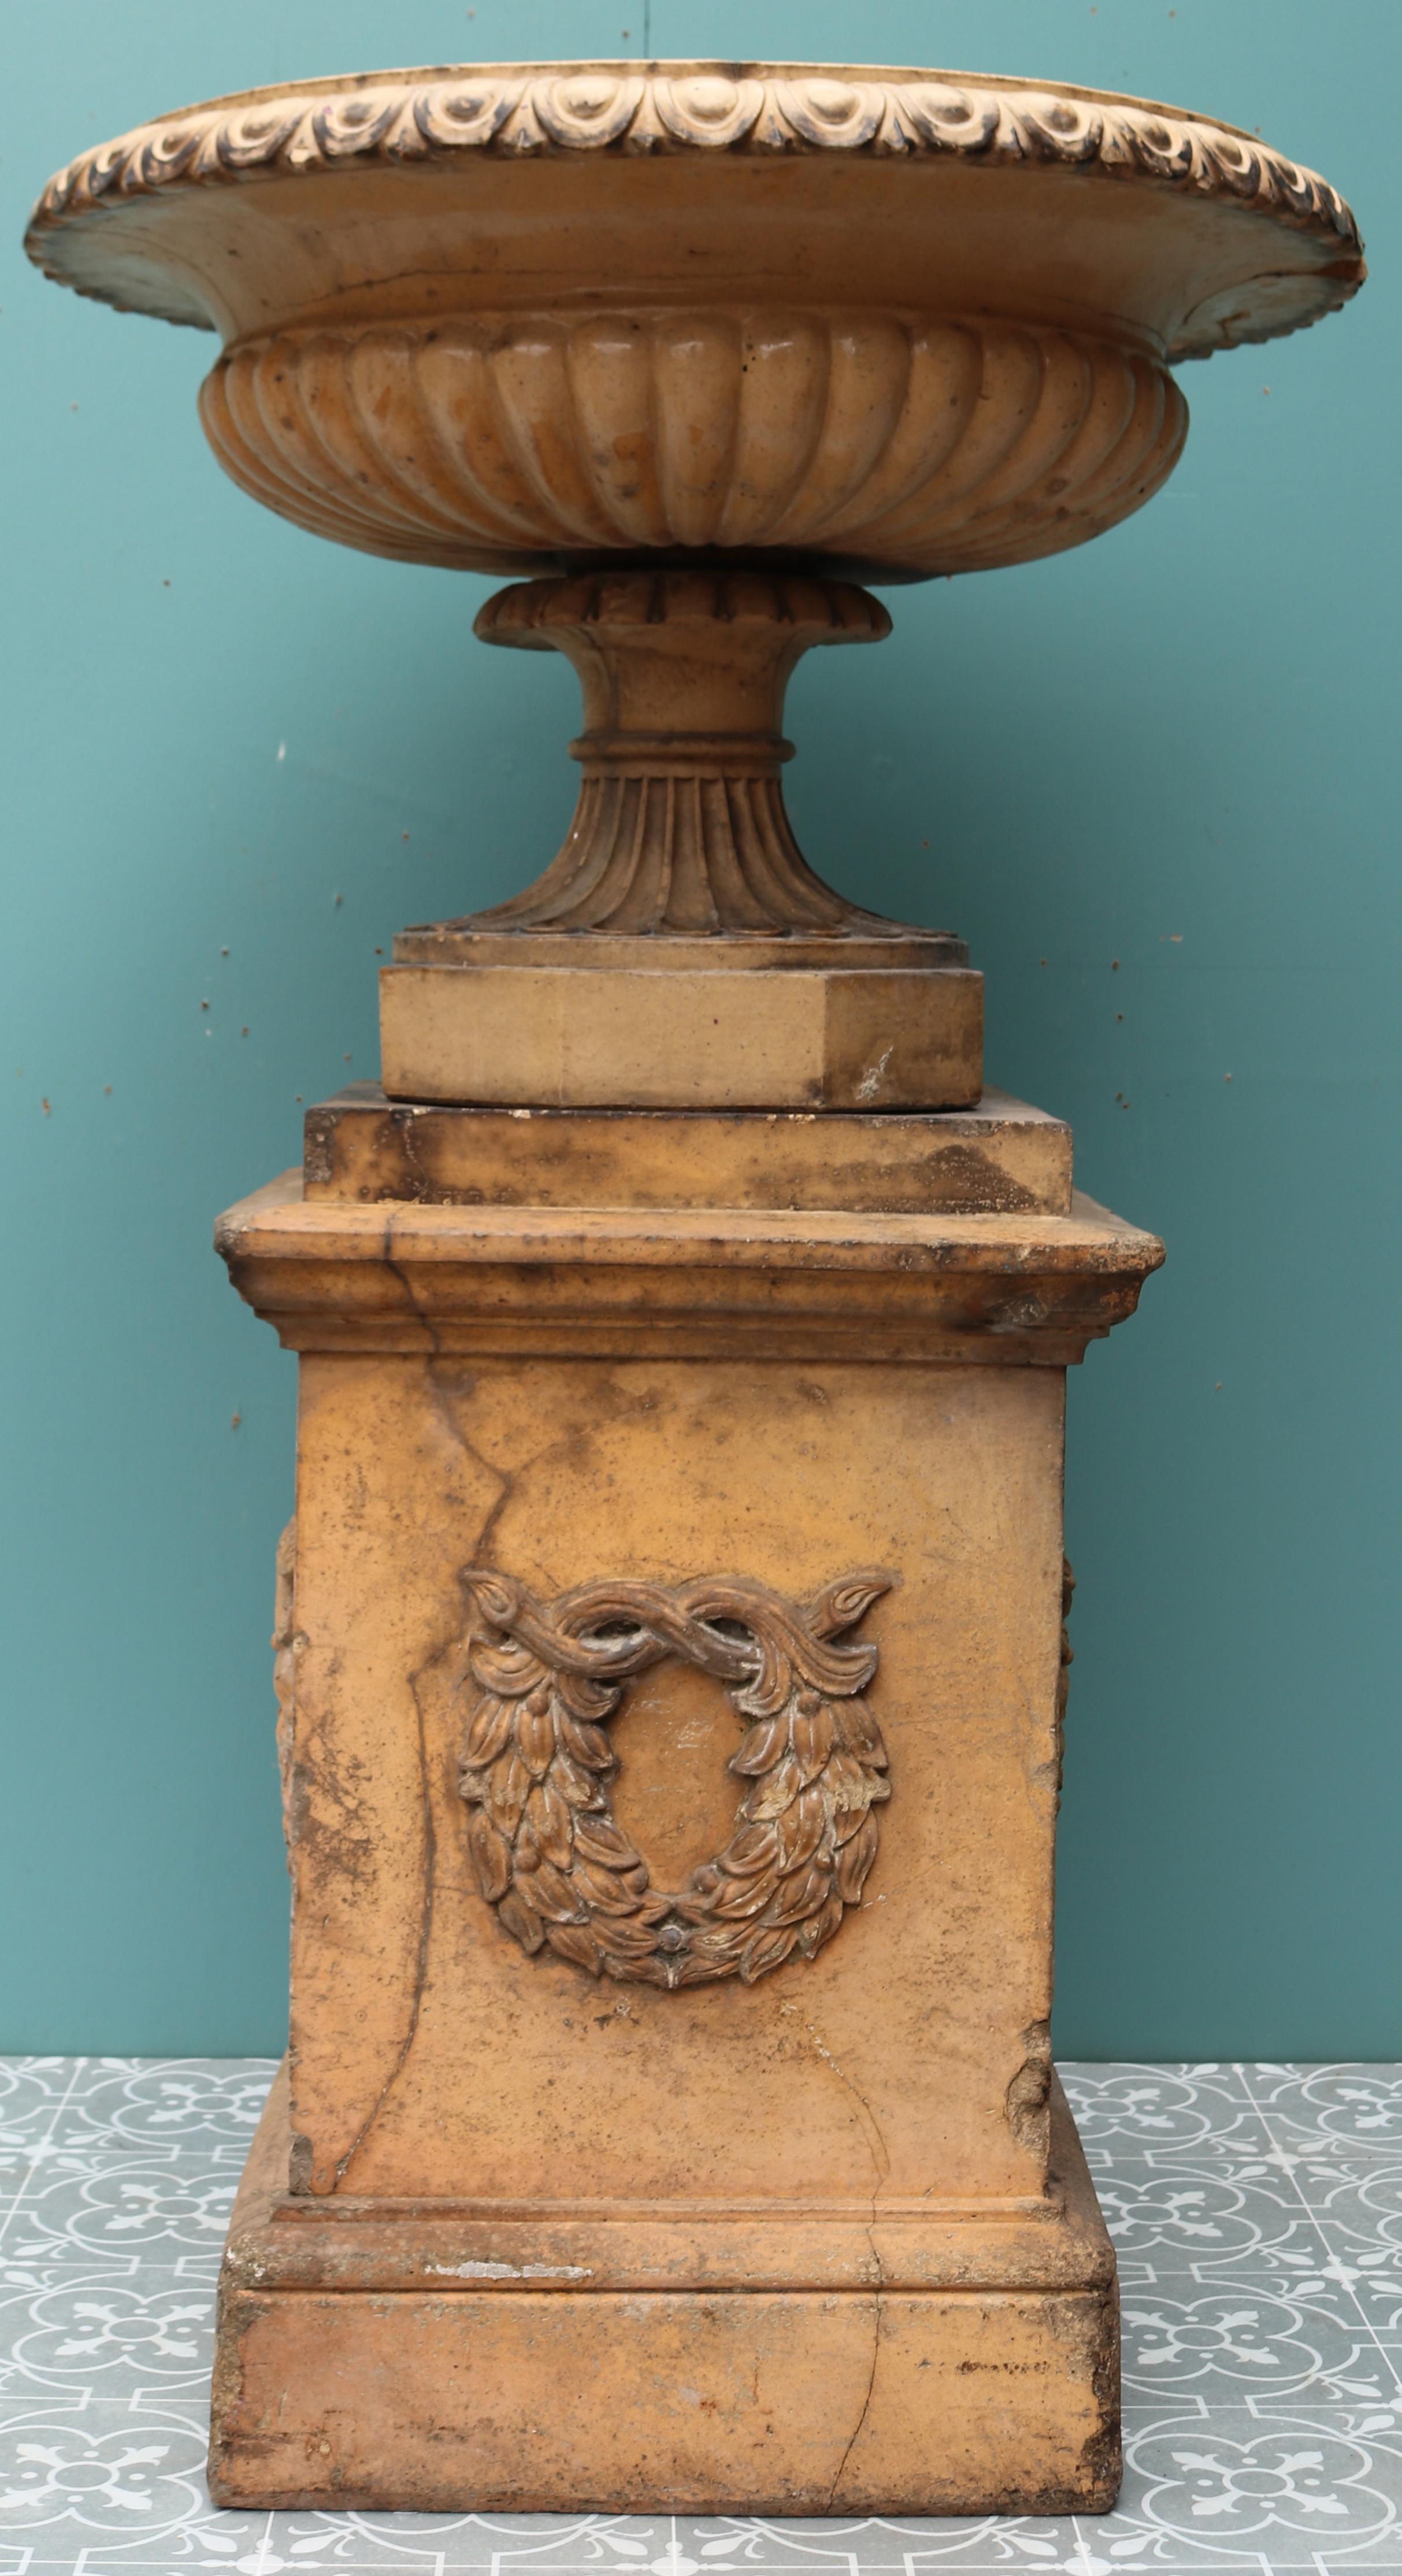 Une urne tazza de jardin récupérée sur piédestal par I. P. Combes & Co. Poteries en terre cuite vernissée, Chesterfield.

Dimensions supplémentaires :

Base 45 x 45 cm

Diamètre de l'urne 73 cm

Hauteur intérieure de l'urne 18 cm